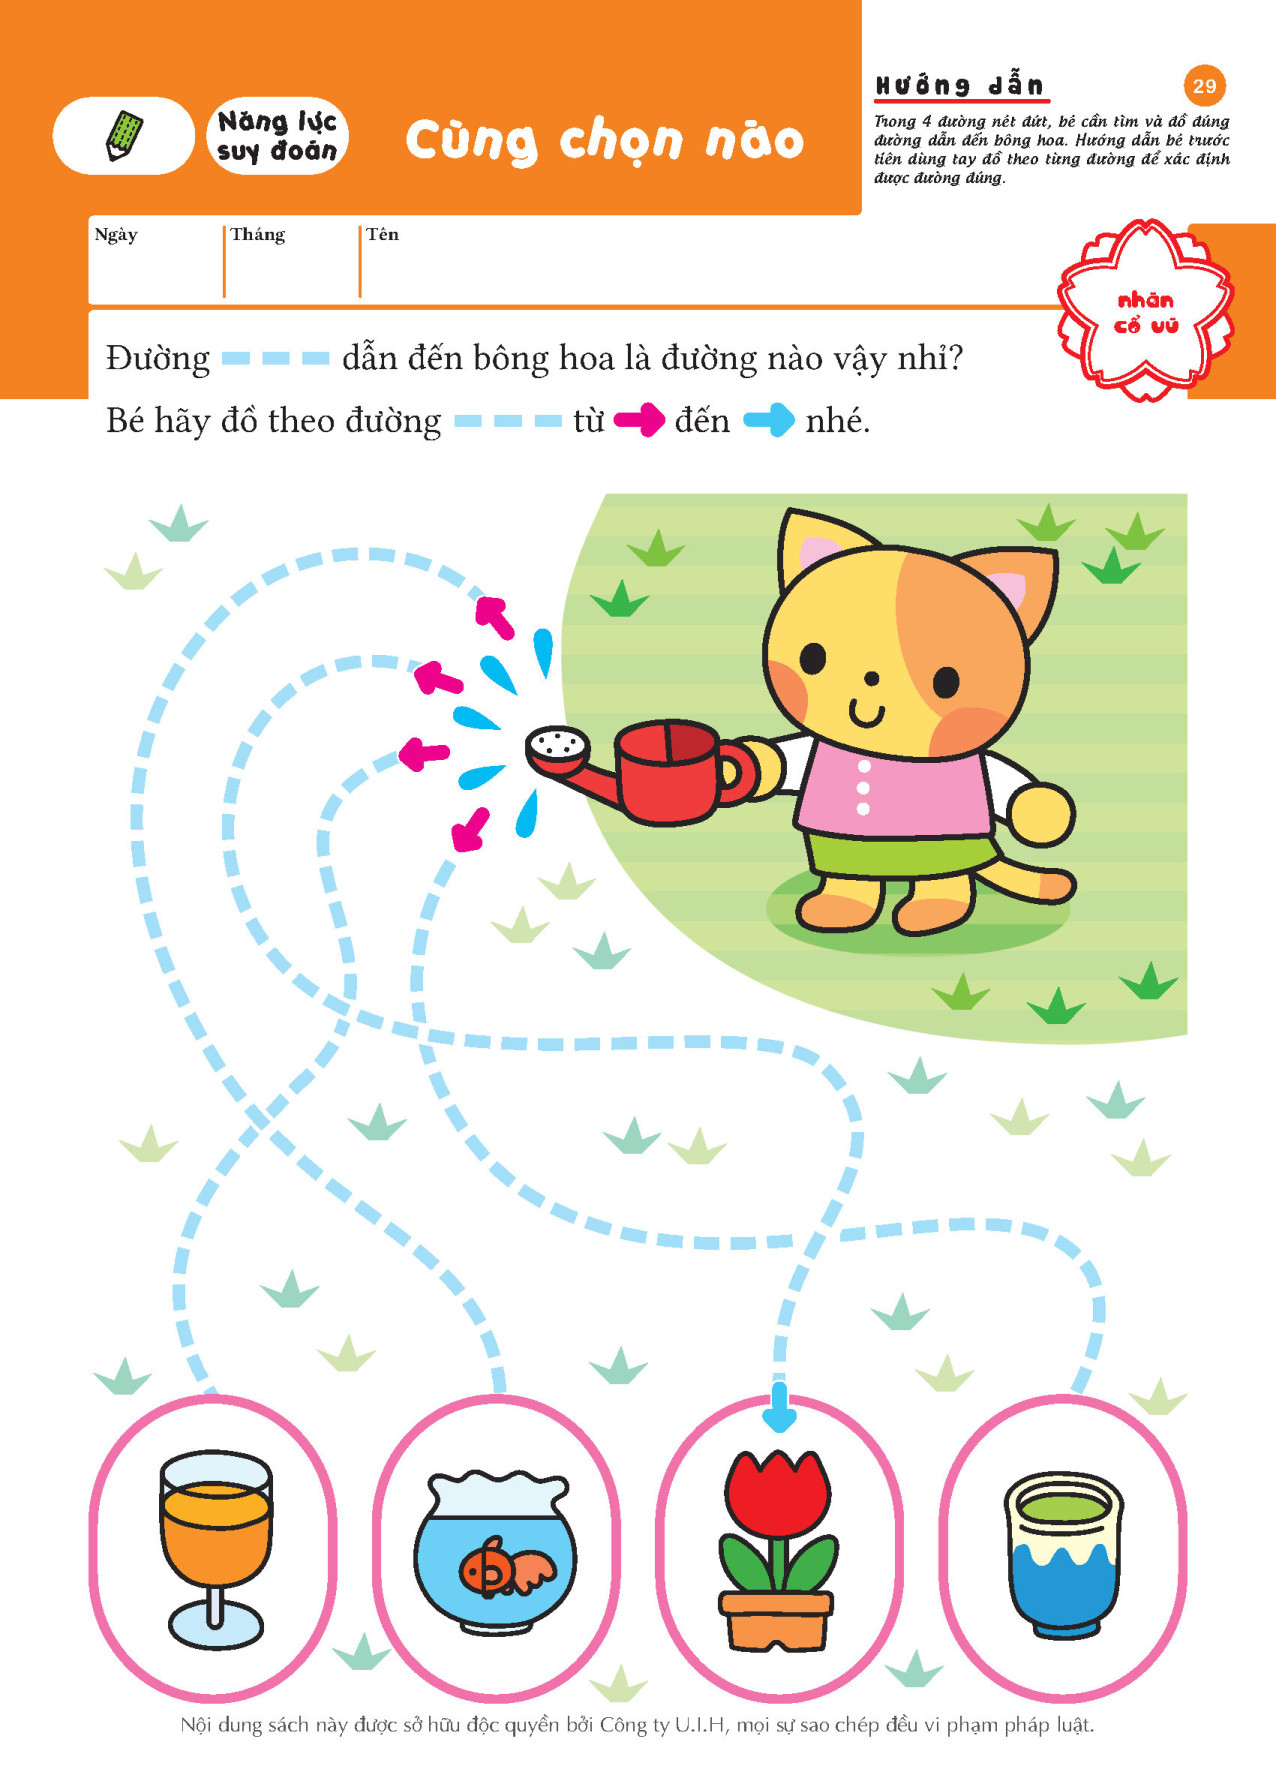 Mê cung (3 ~ 4 tuổi) - Giáo dục Nhật Bản - Bộ sách dành cho lứa tuổi nhi đồng - Thích hợp cho trẻ đã bắt đầu tập đồ